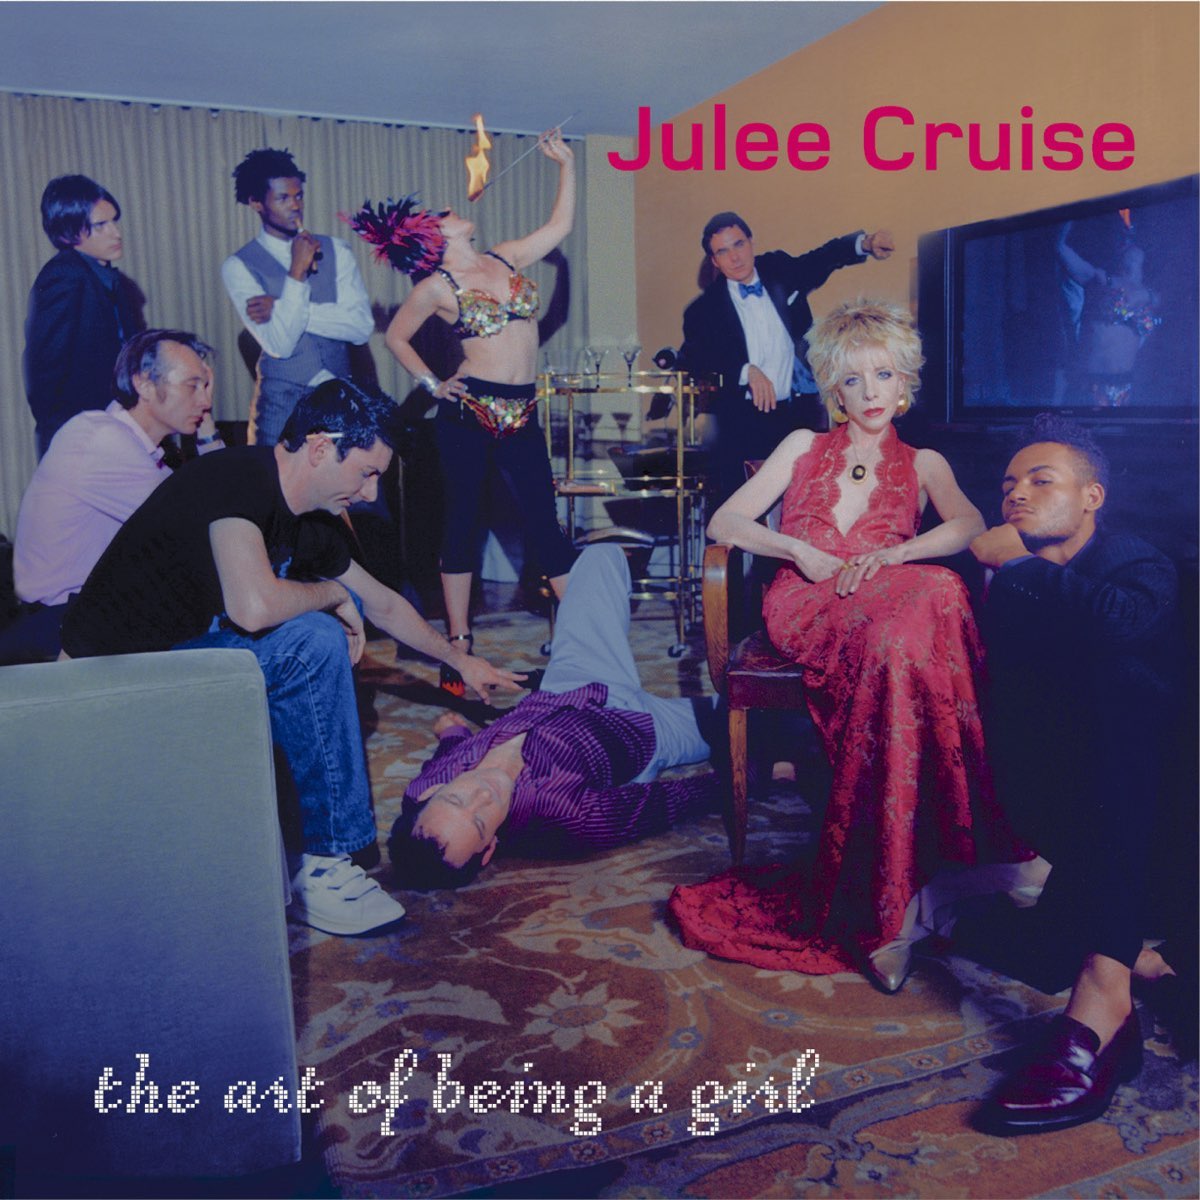 julee cruise full album